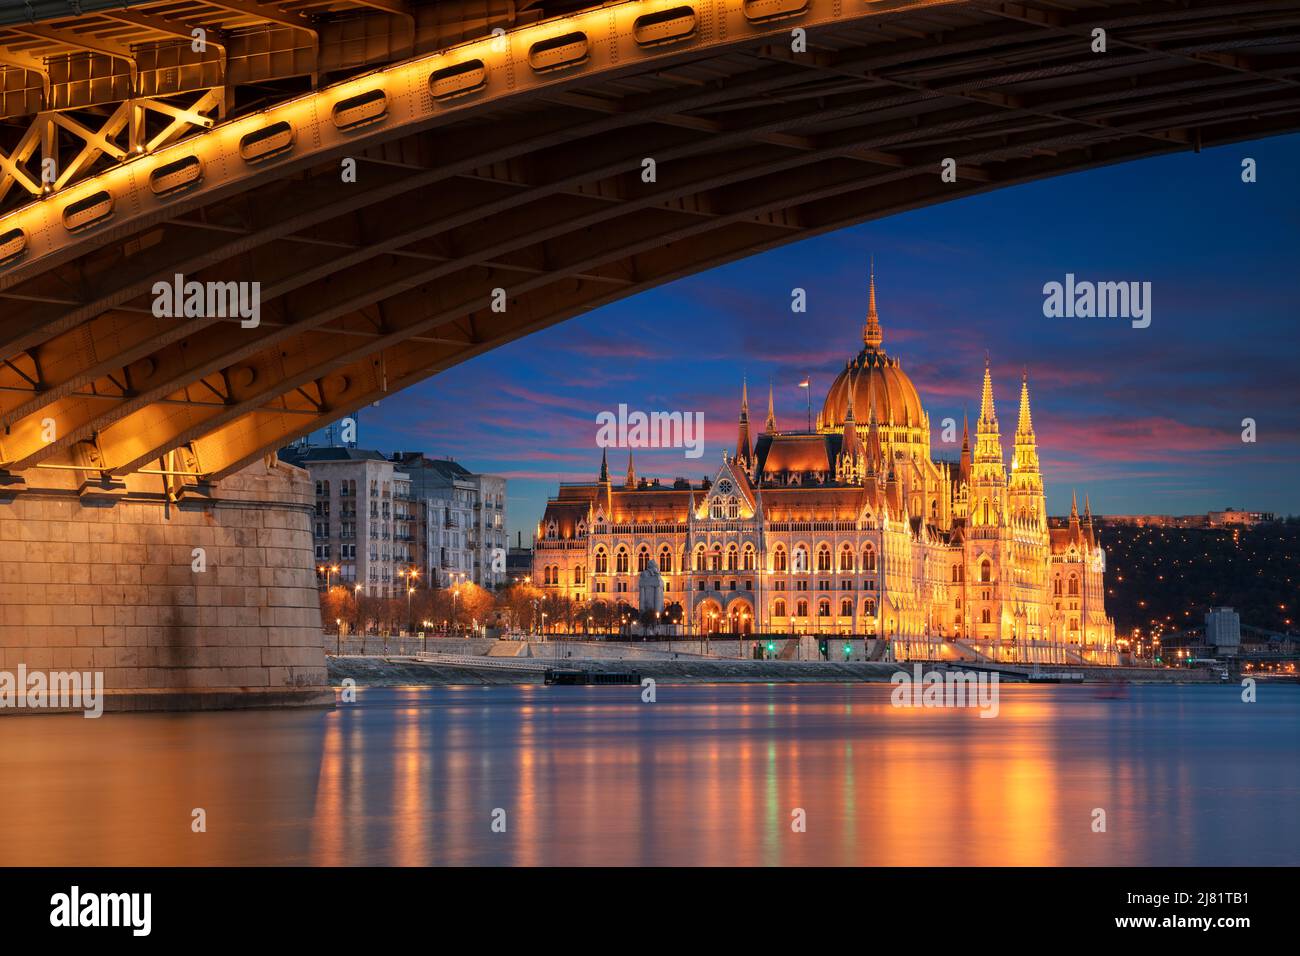 Budapest, Ungheria. Immagine del paesaggio urbano di Budapest, capitale dell'Ungheria con il Ponte Margherita e il Palazzo del Parlamento Ungherese al tramonto. Foto Stock